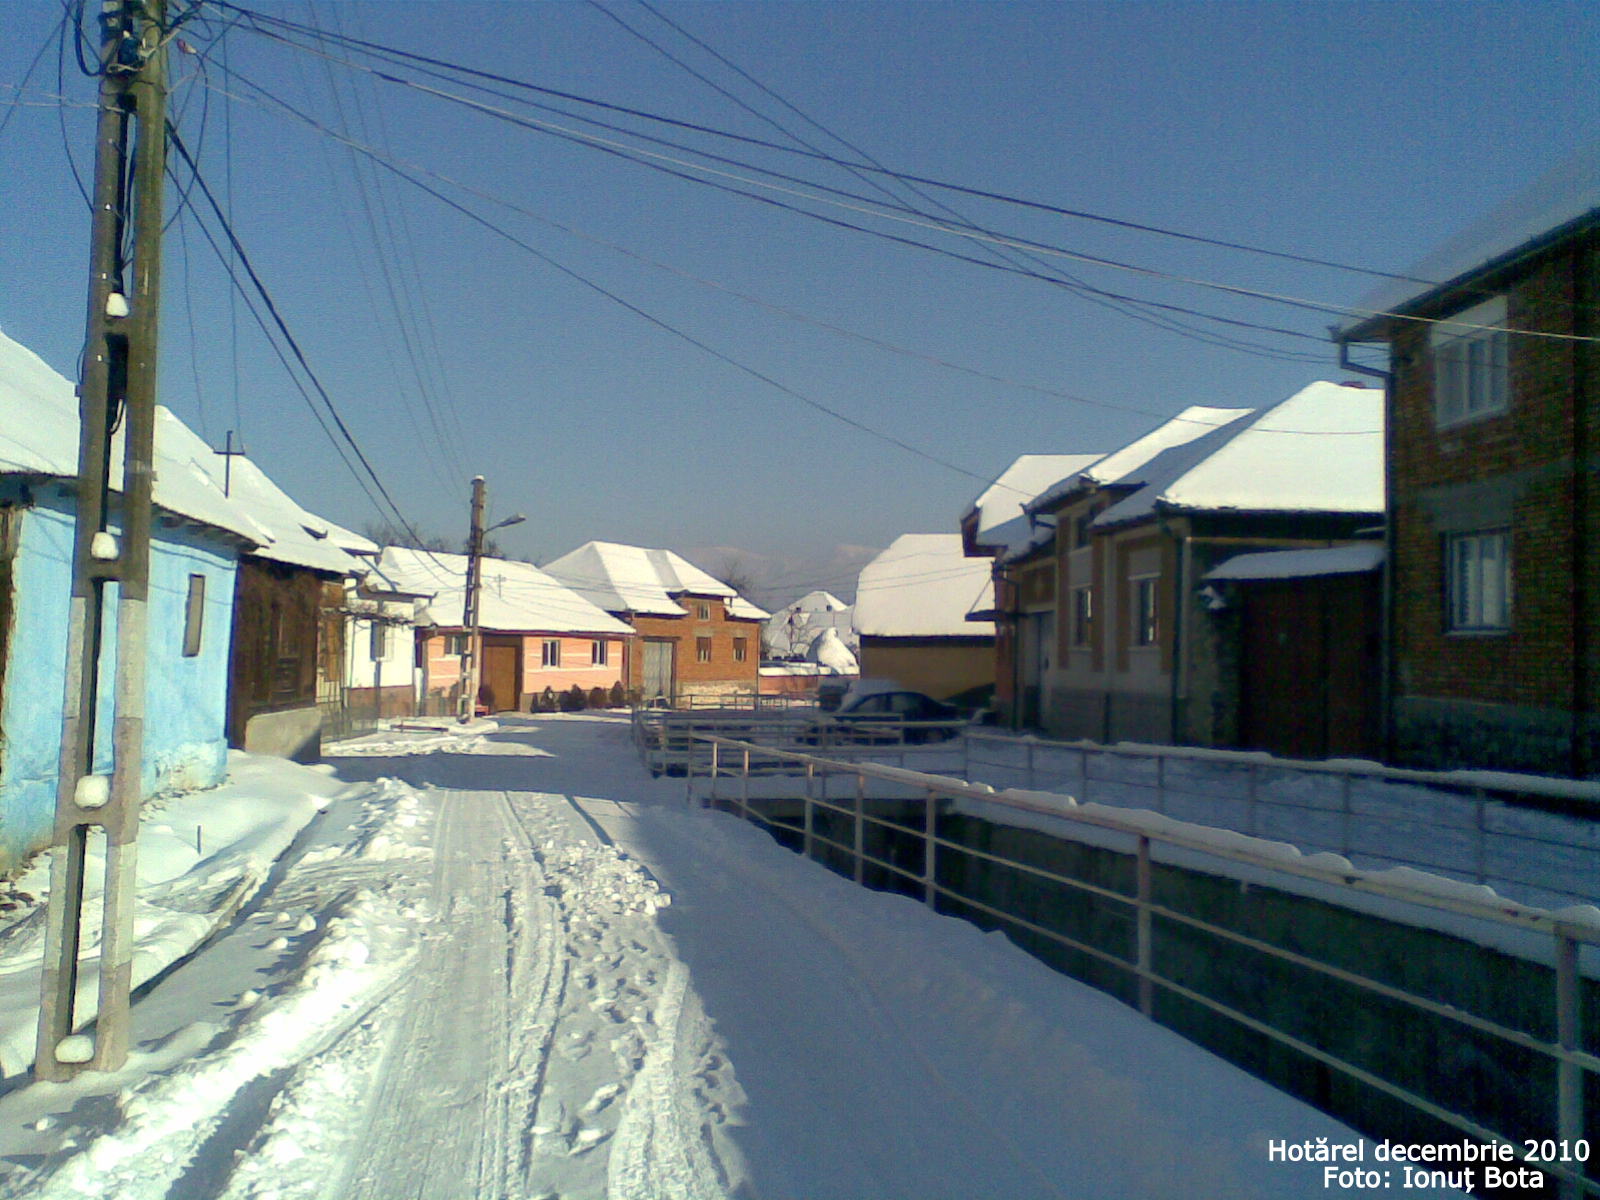 Hotarel, Bihor, Romania decembrie 2010 ; satul Hotarel comuna Lunca judetul Bihor Romania